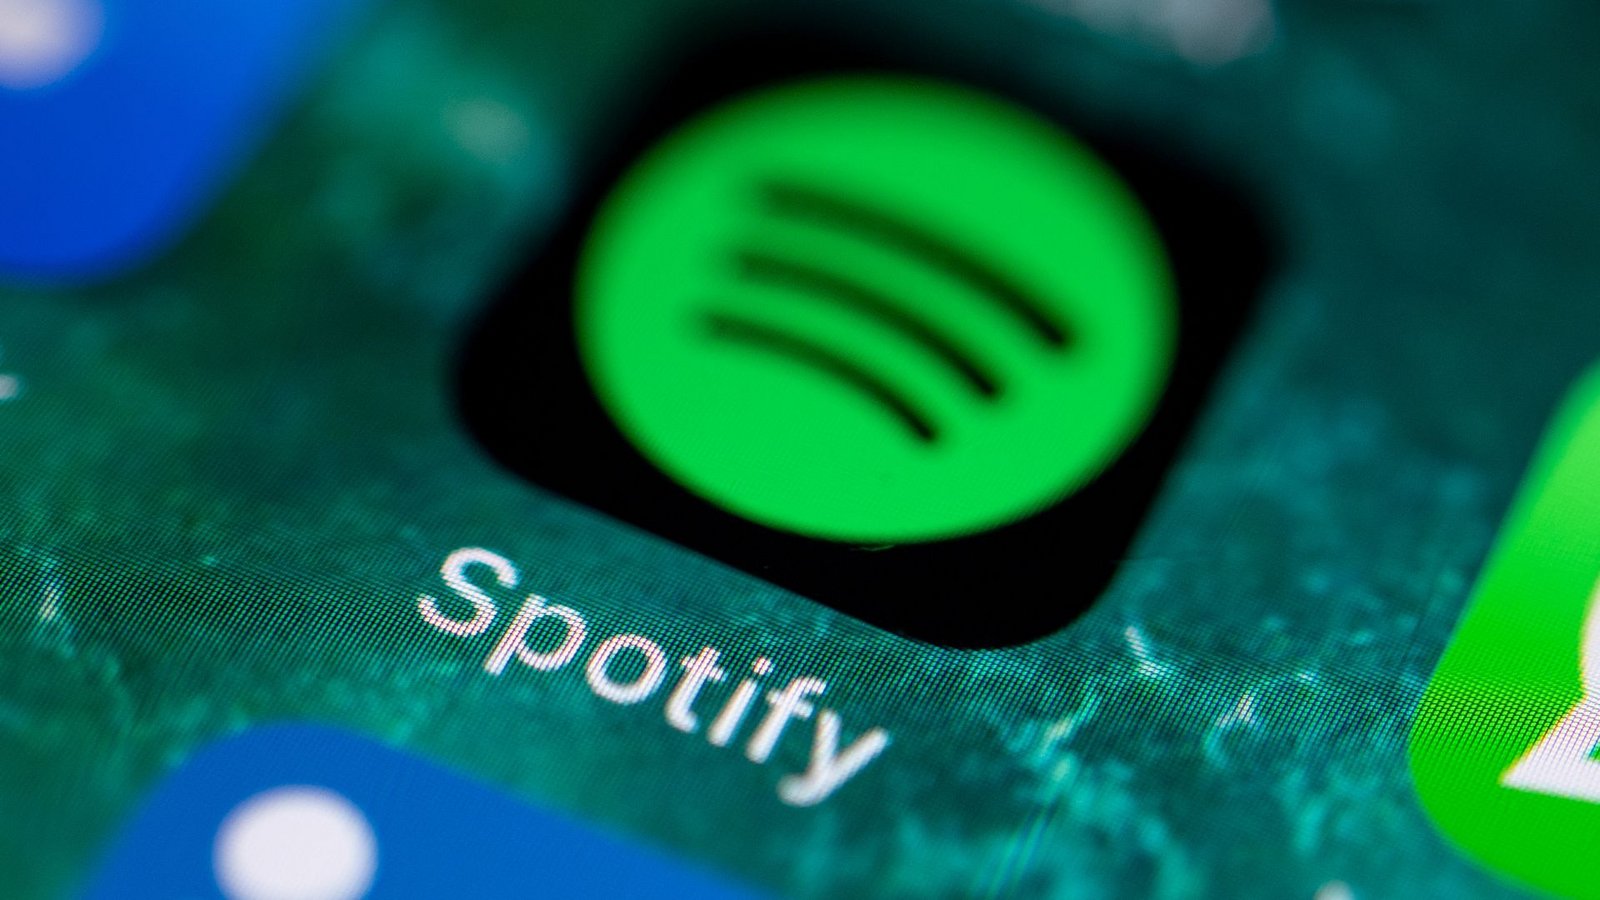 Der Musikdienst Spotify sieht sich bei seinen Wachstumsplänen auf einem guten Kurs.Foto: Fabian Sommer/dpa